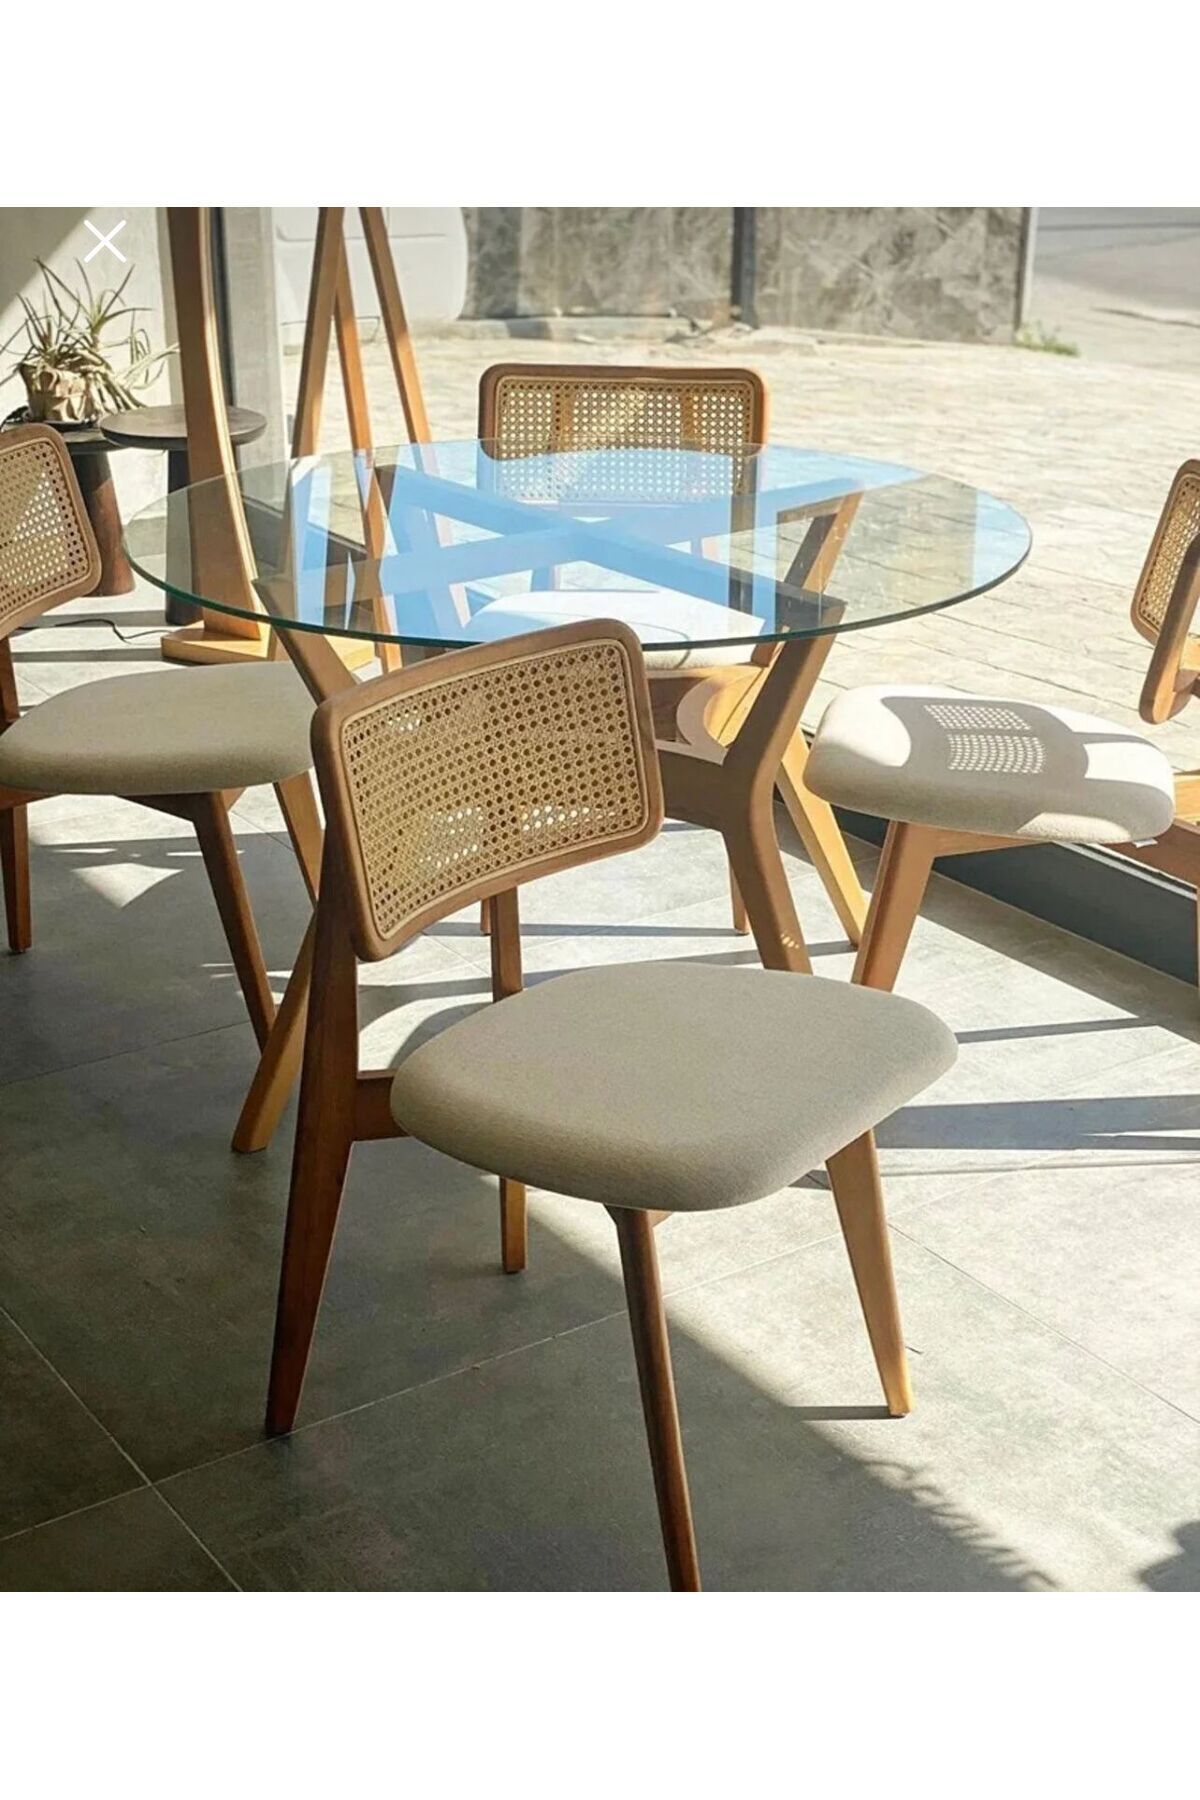 BiSandalye Ahşap naturel (4 Adet) Zion Hasırlı Sandalye, Mutfak ve Bahçe Sandalyesi Salon hazeranlı sandalye